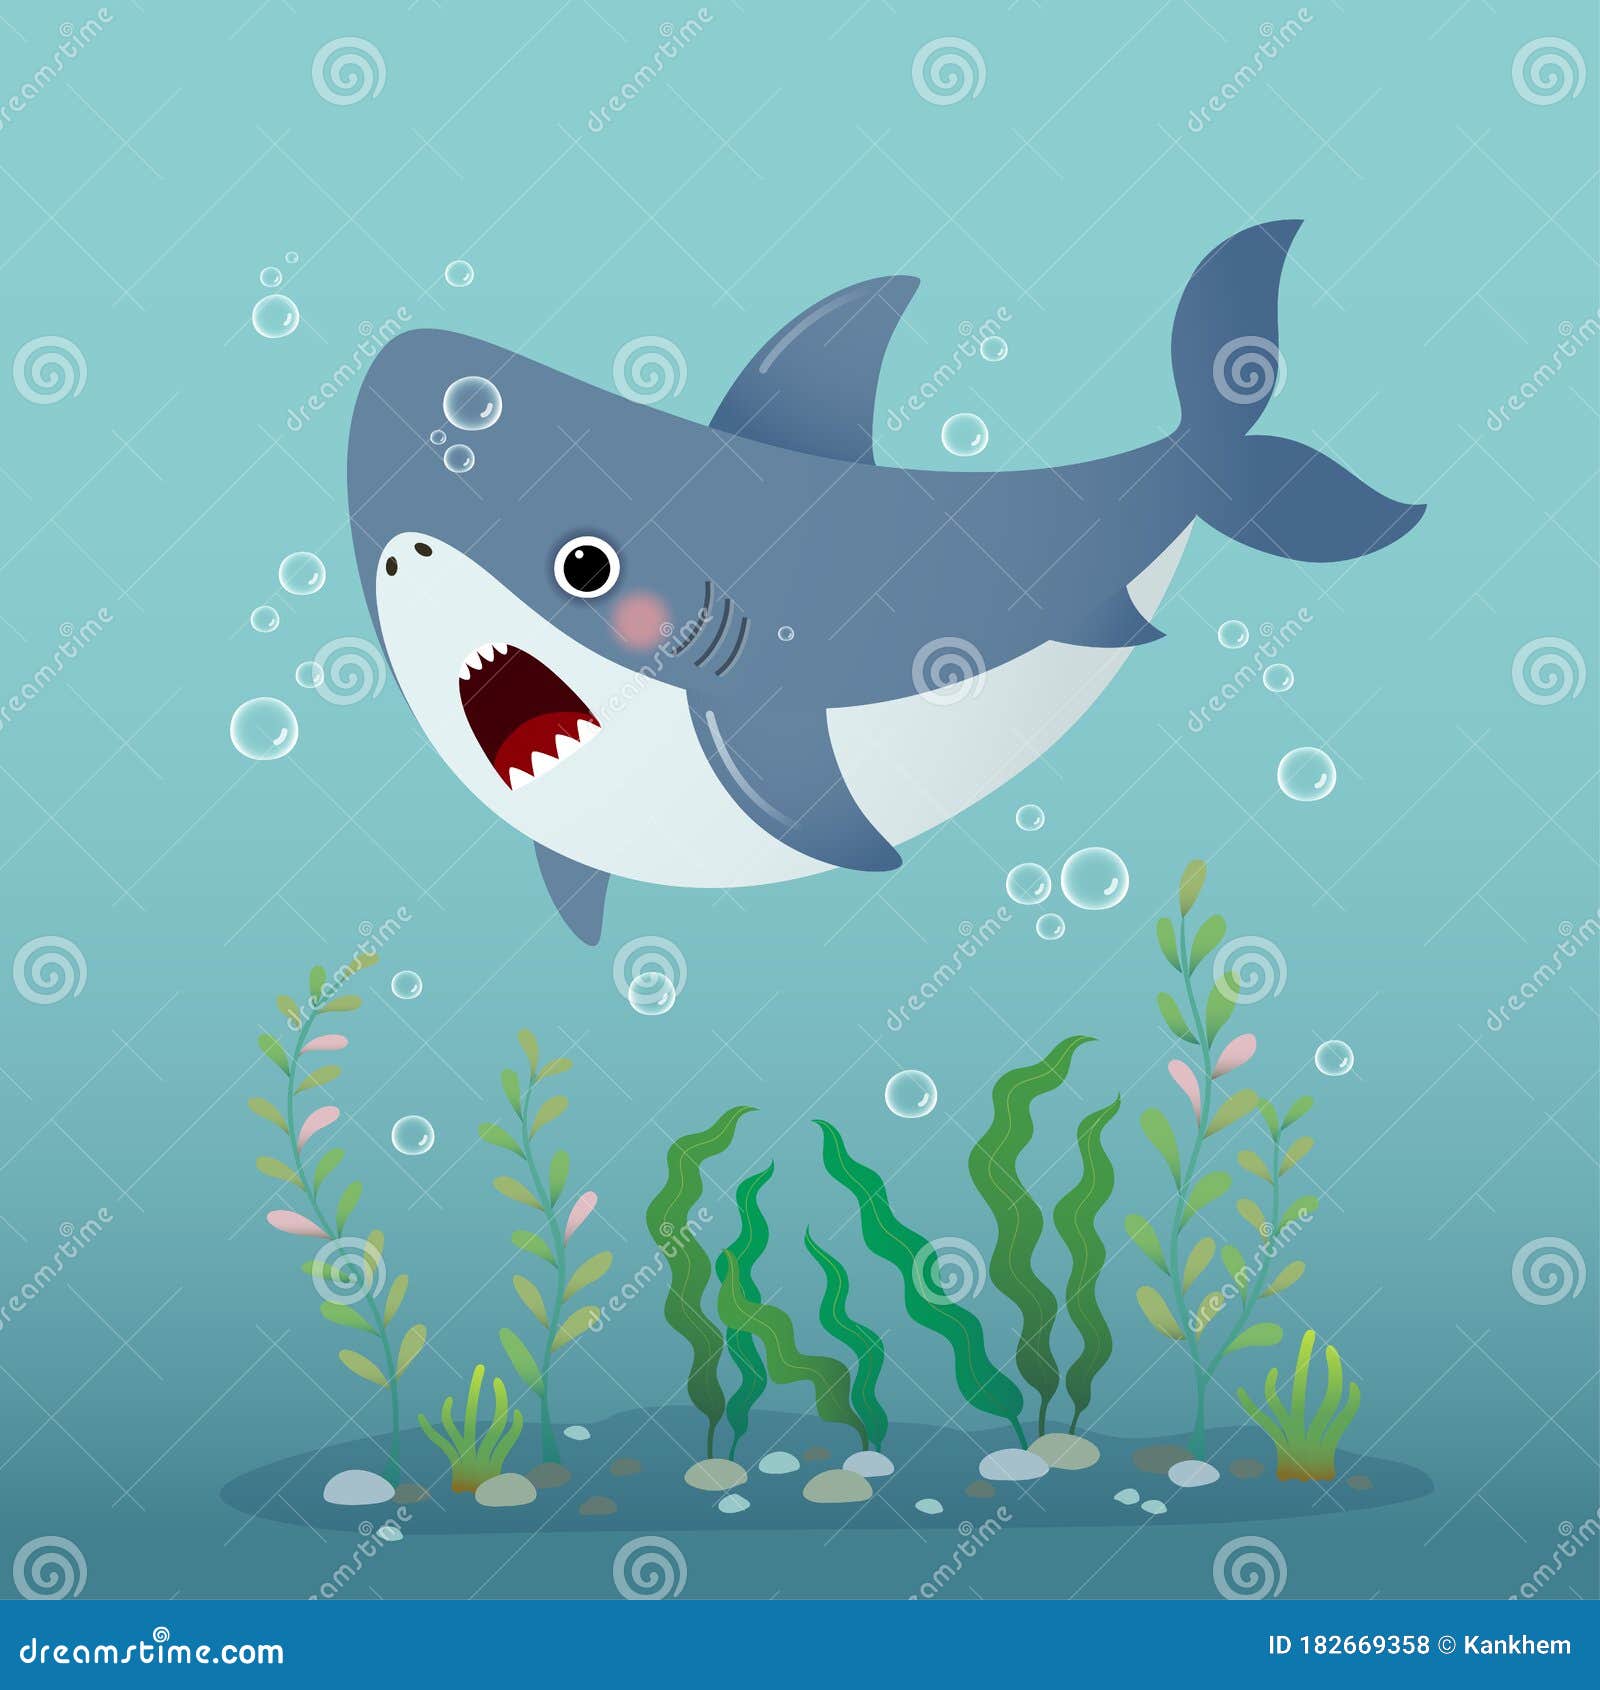 Shark Flashcard Stock Illustrations – 47 Shark Flashcard Stock